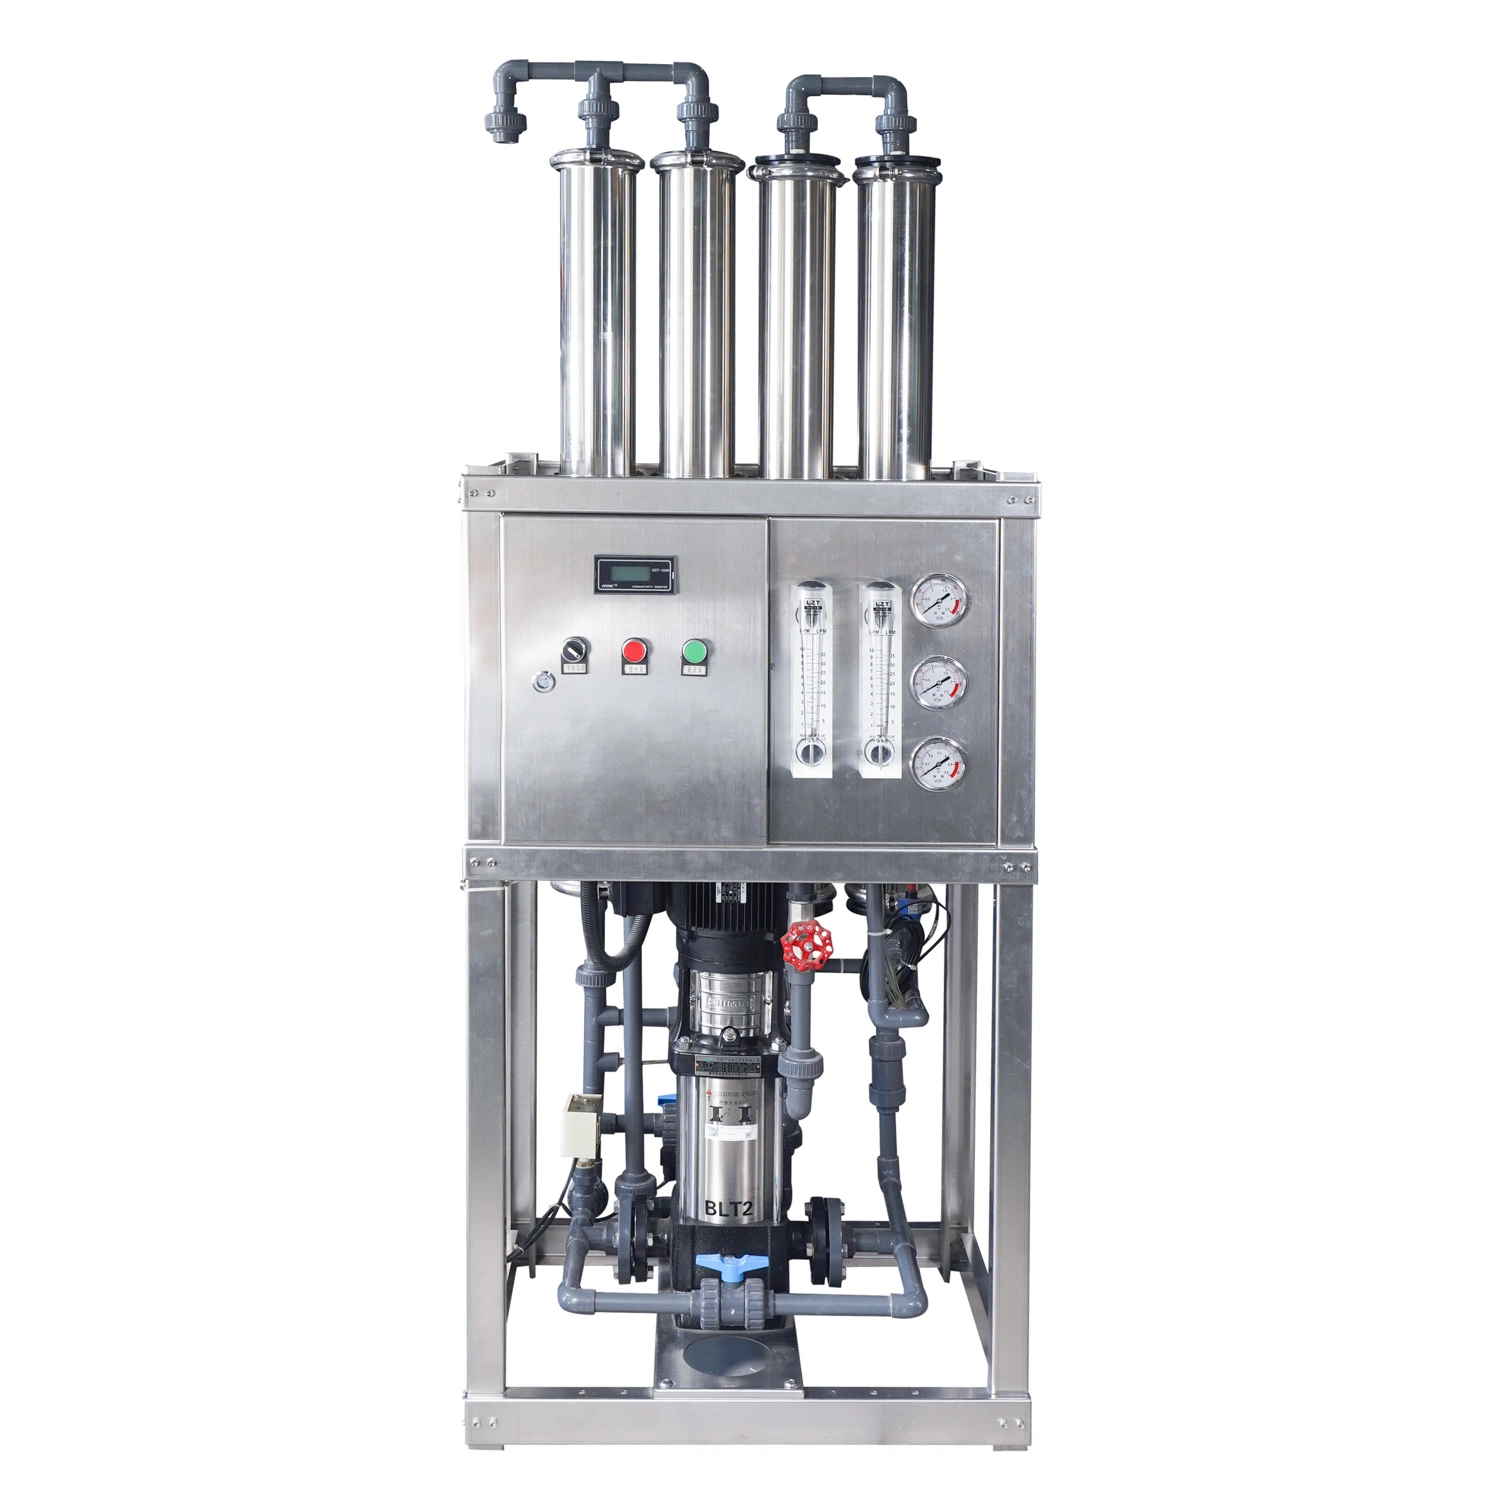 Equipo de tratamiento de agua de purificación RO de ósmosis inversa industrial de 200 lph a 1000 lph